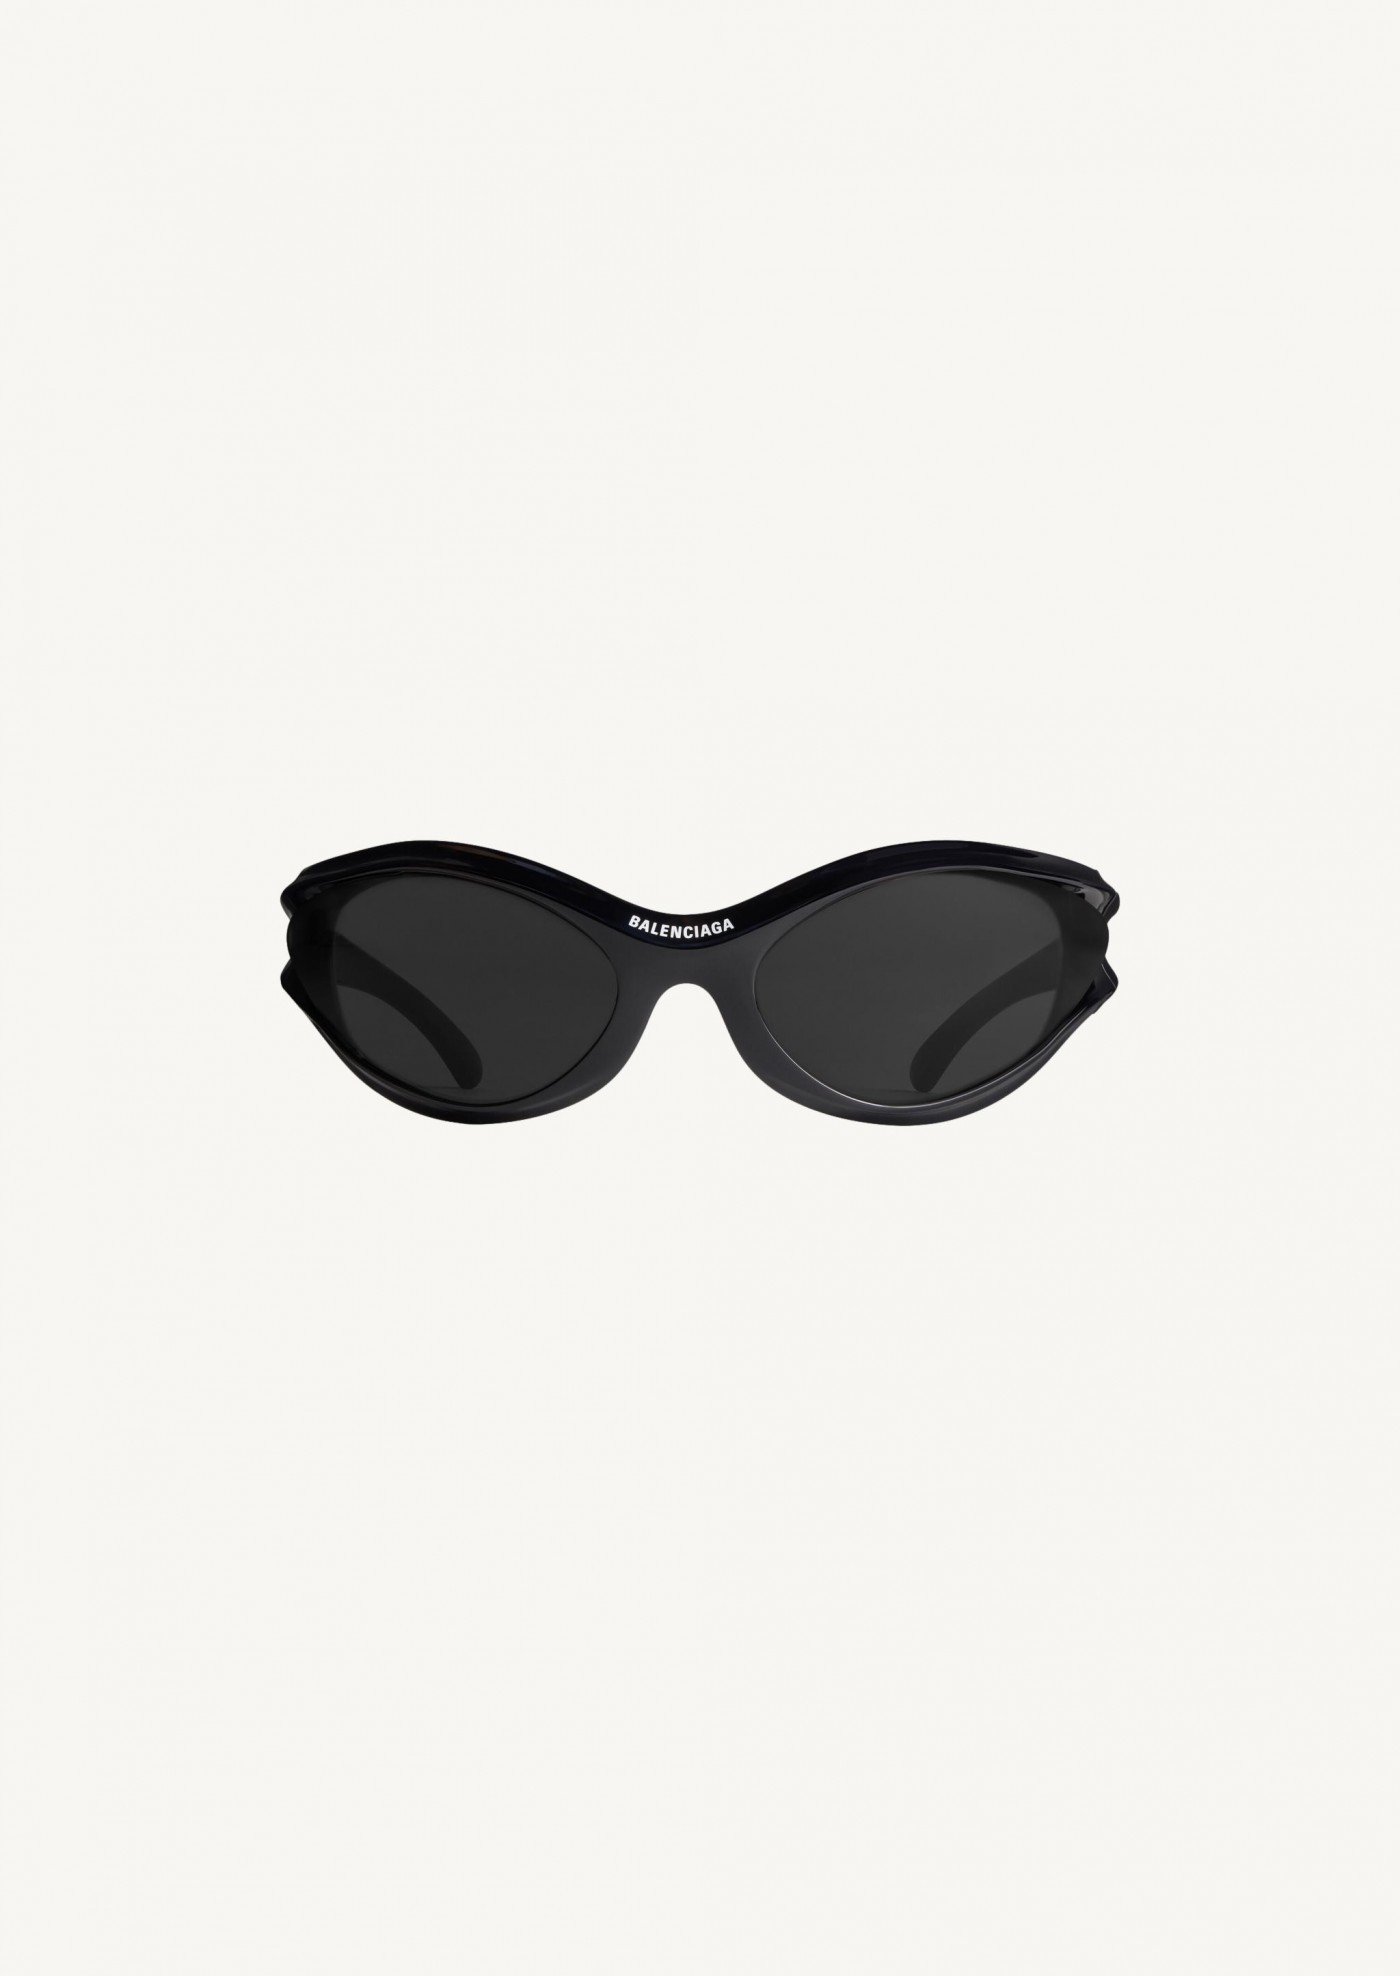 Dynamo round sunglasses in black